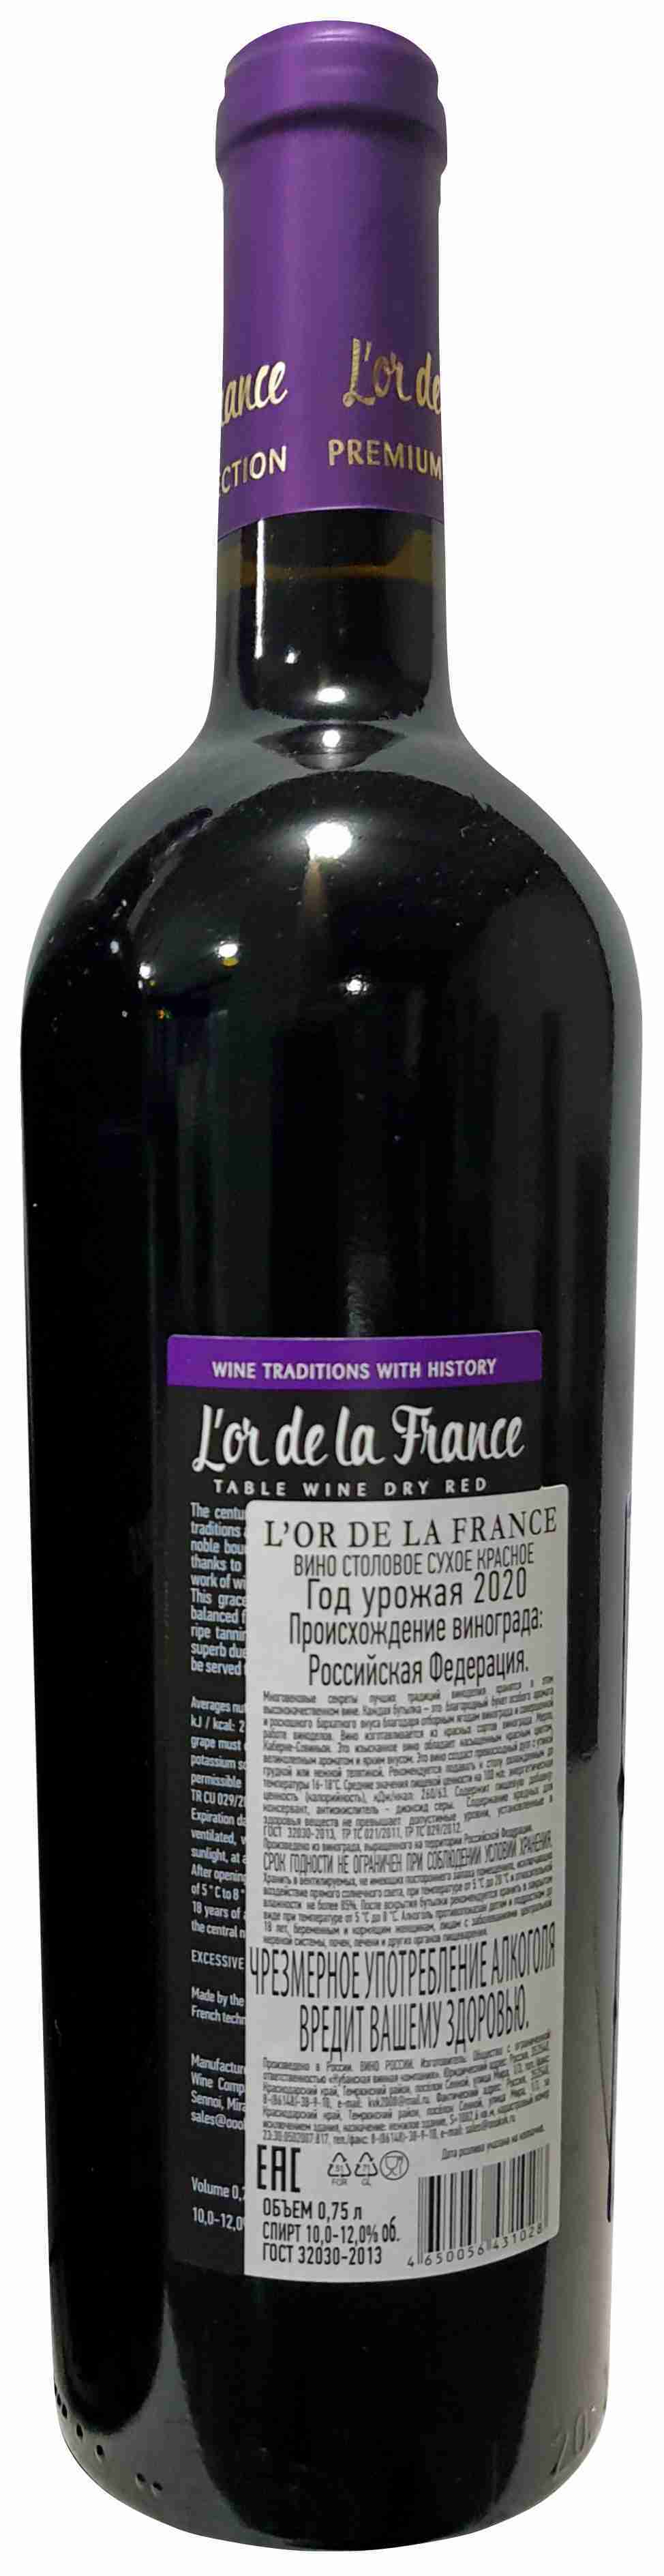 Lor de la France вино. Вино л видам столовое красное. Вино Chiloe Chile Syrah Merlot. Lor de la France вино цена.